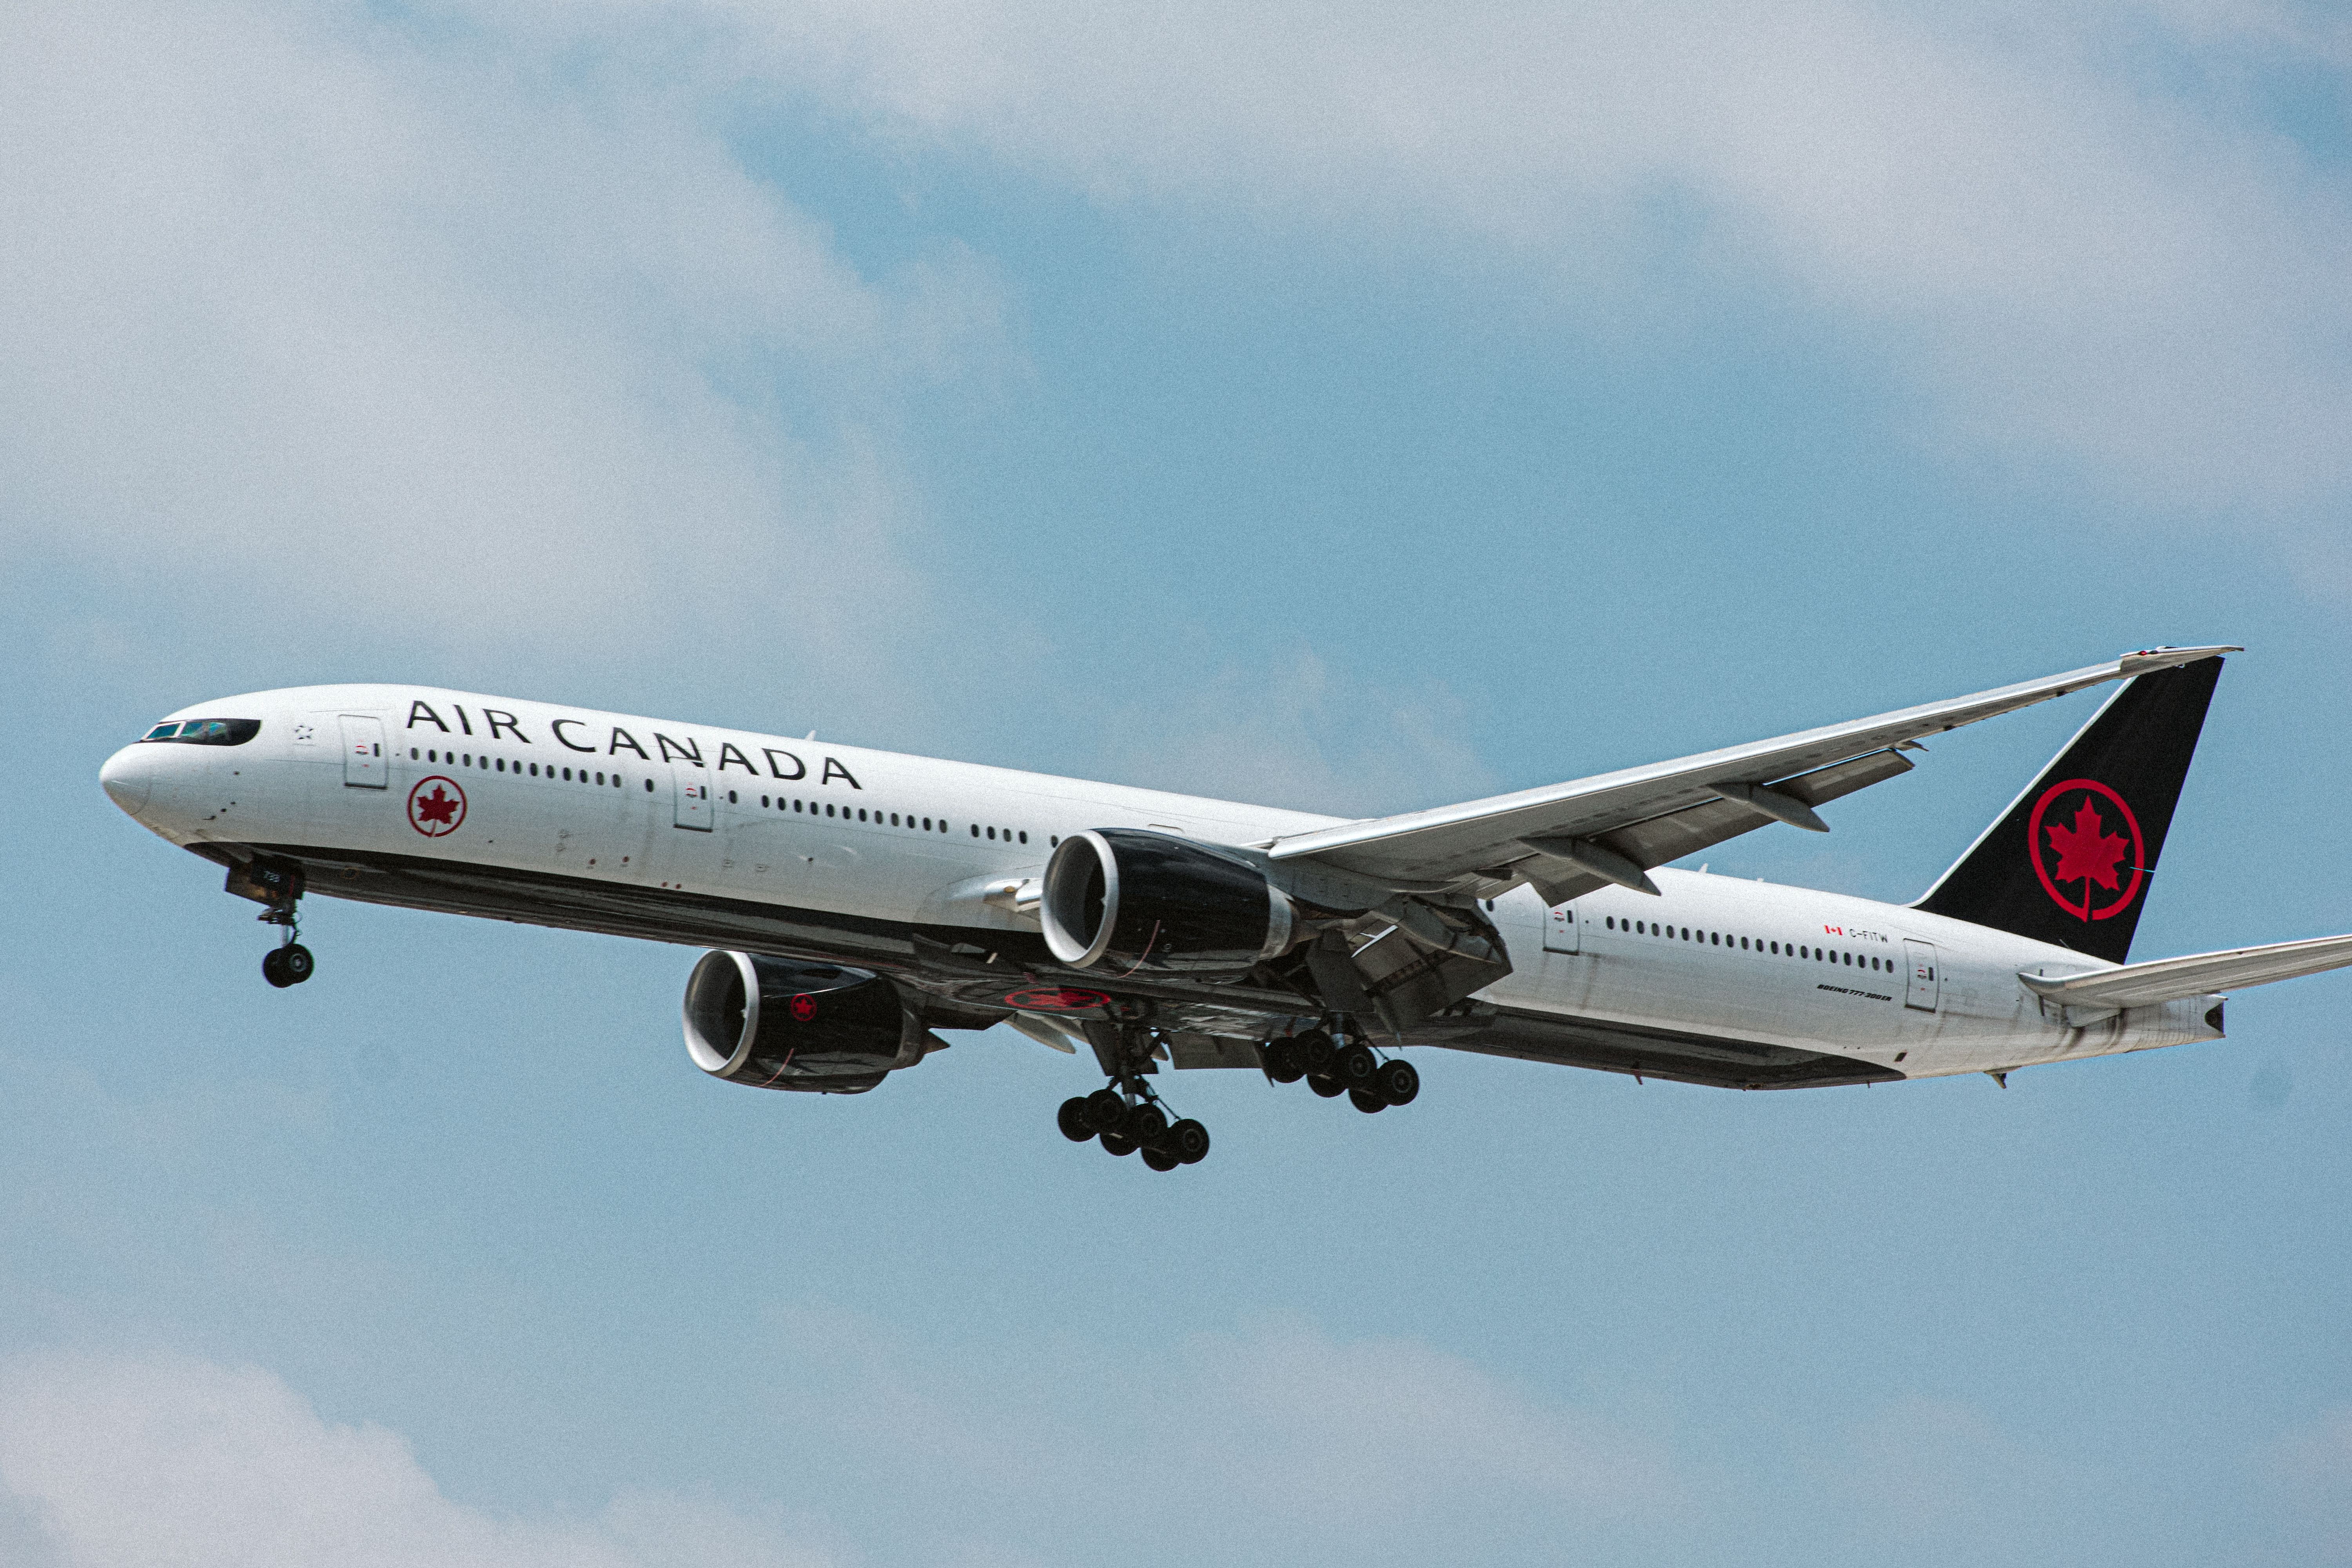 AIr Canada Boeing 777-300ER landing at GRU